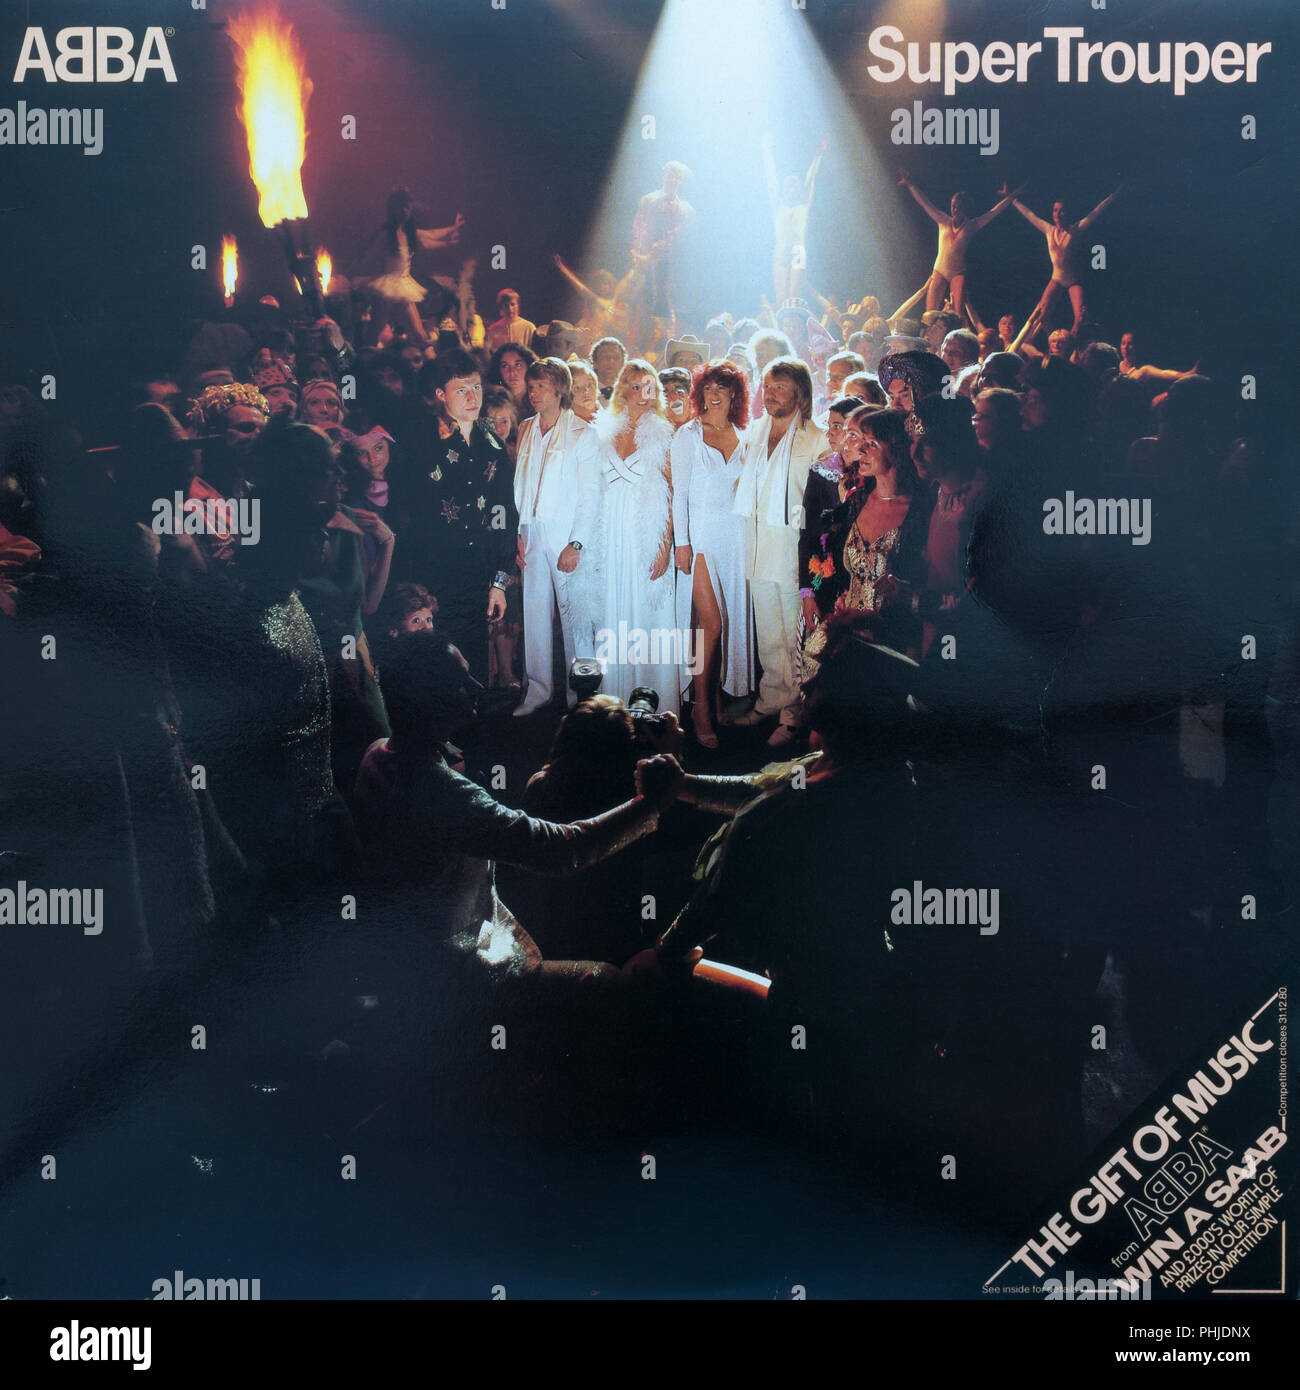 Super Trouper Abba Album Cover Stockfoto